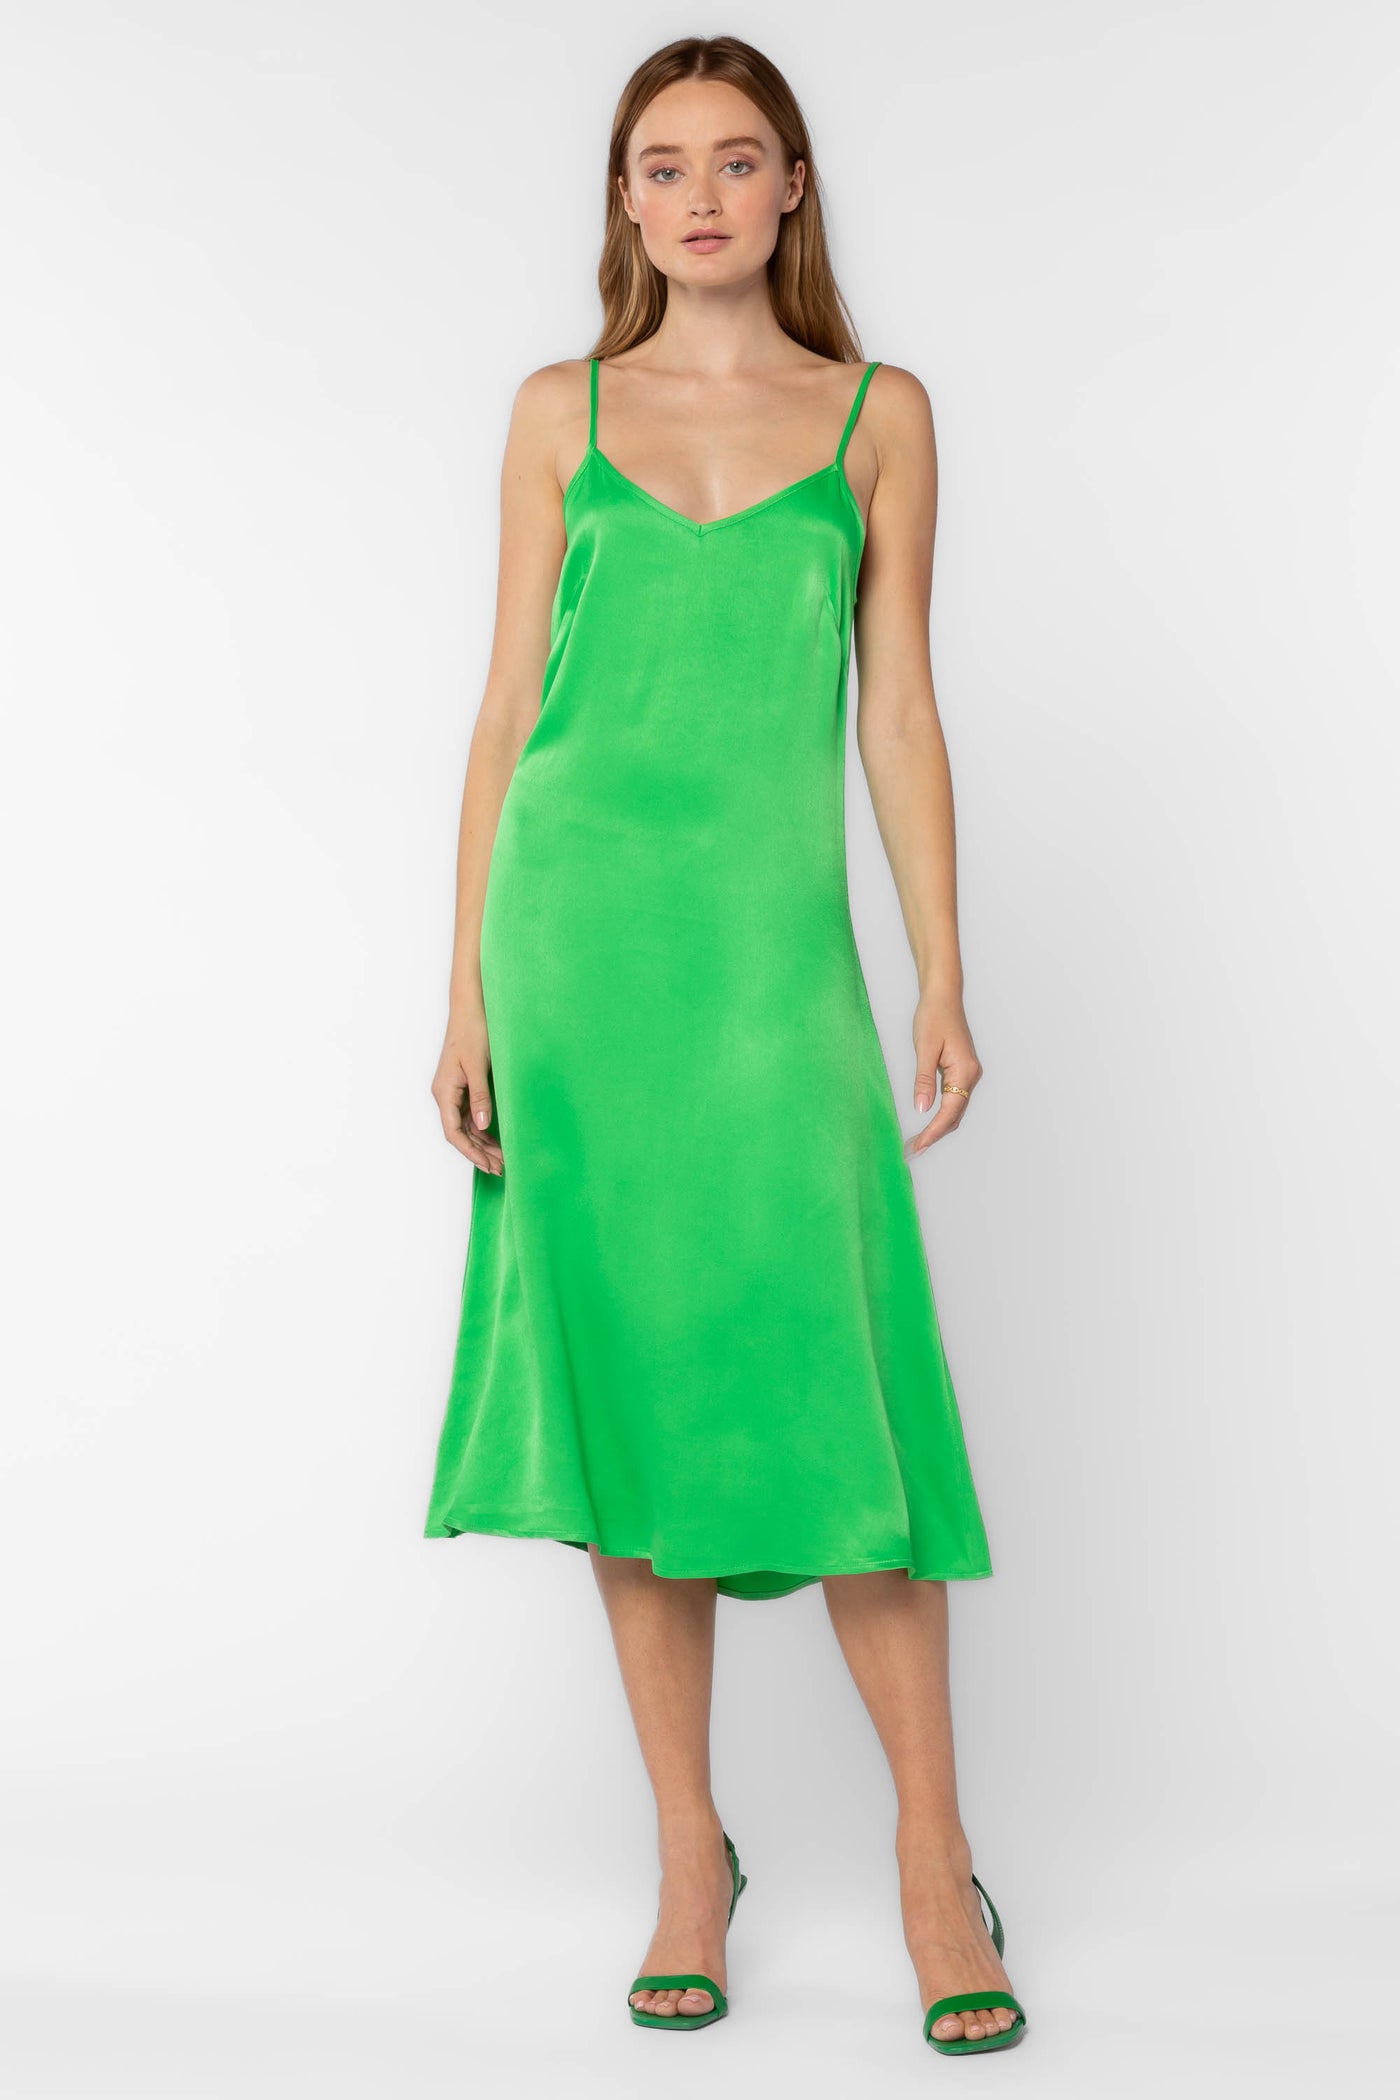 Dreya Green Dress - Dresses - Velvet Heart Clothing